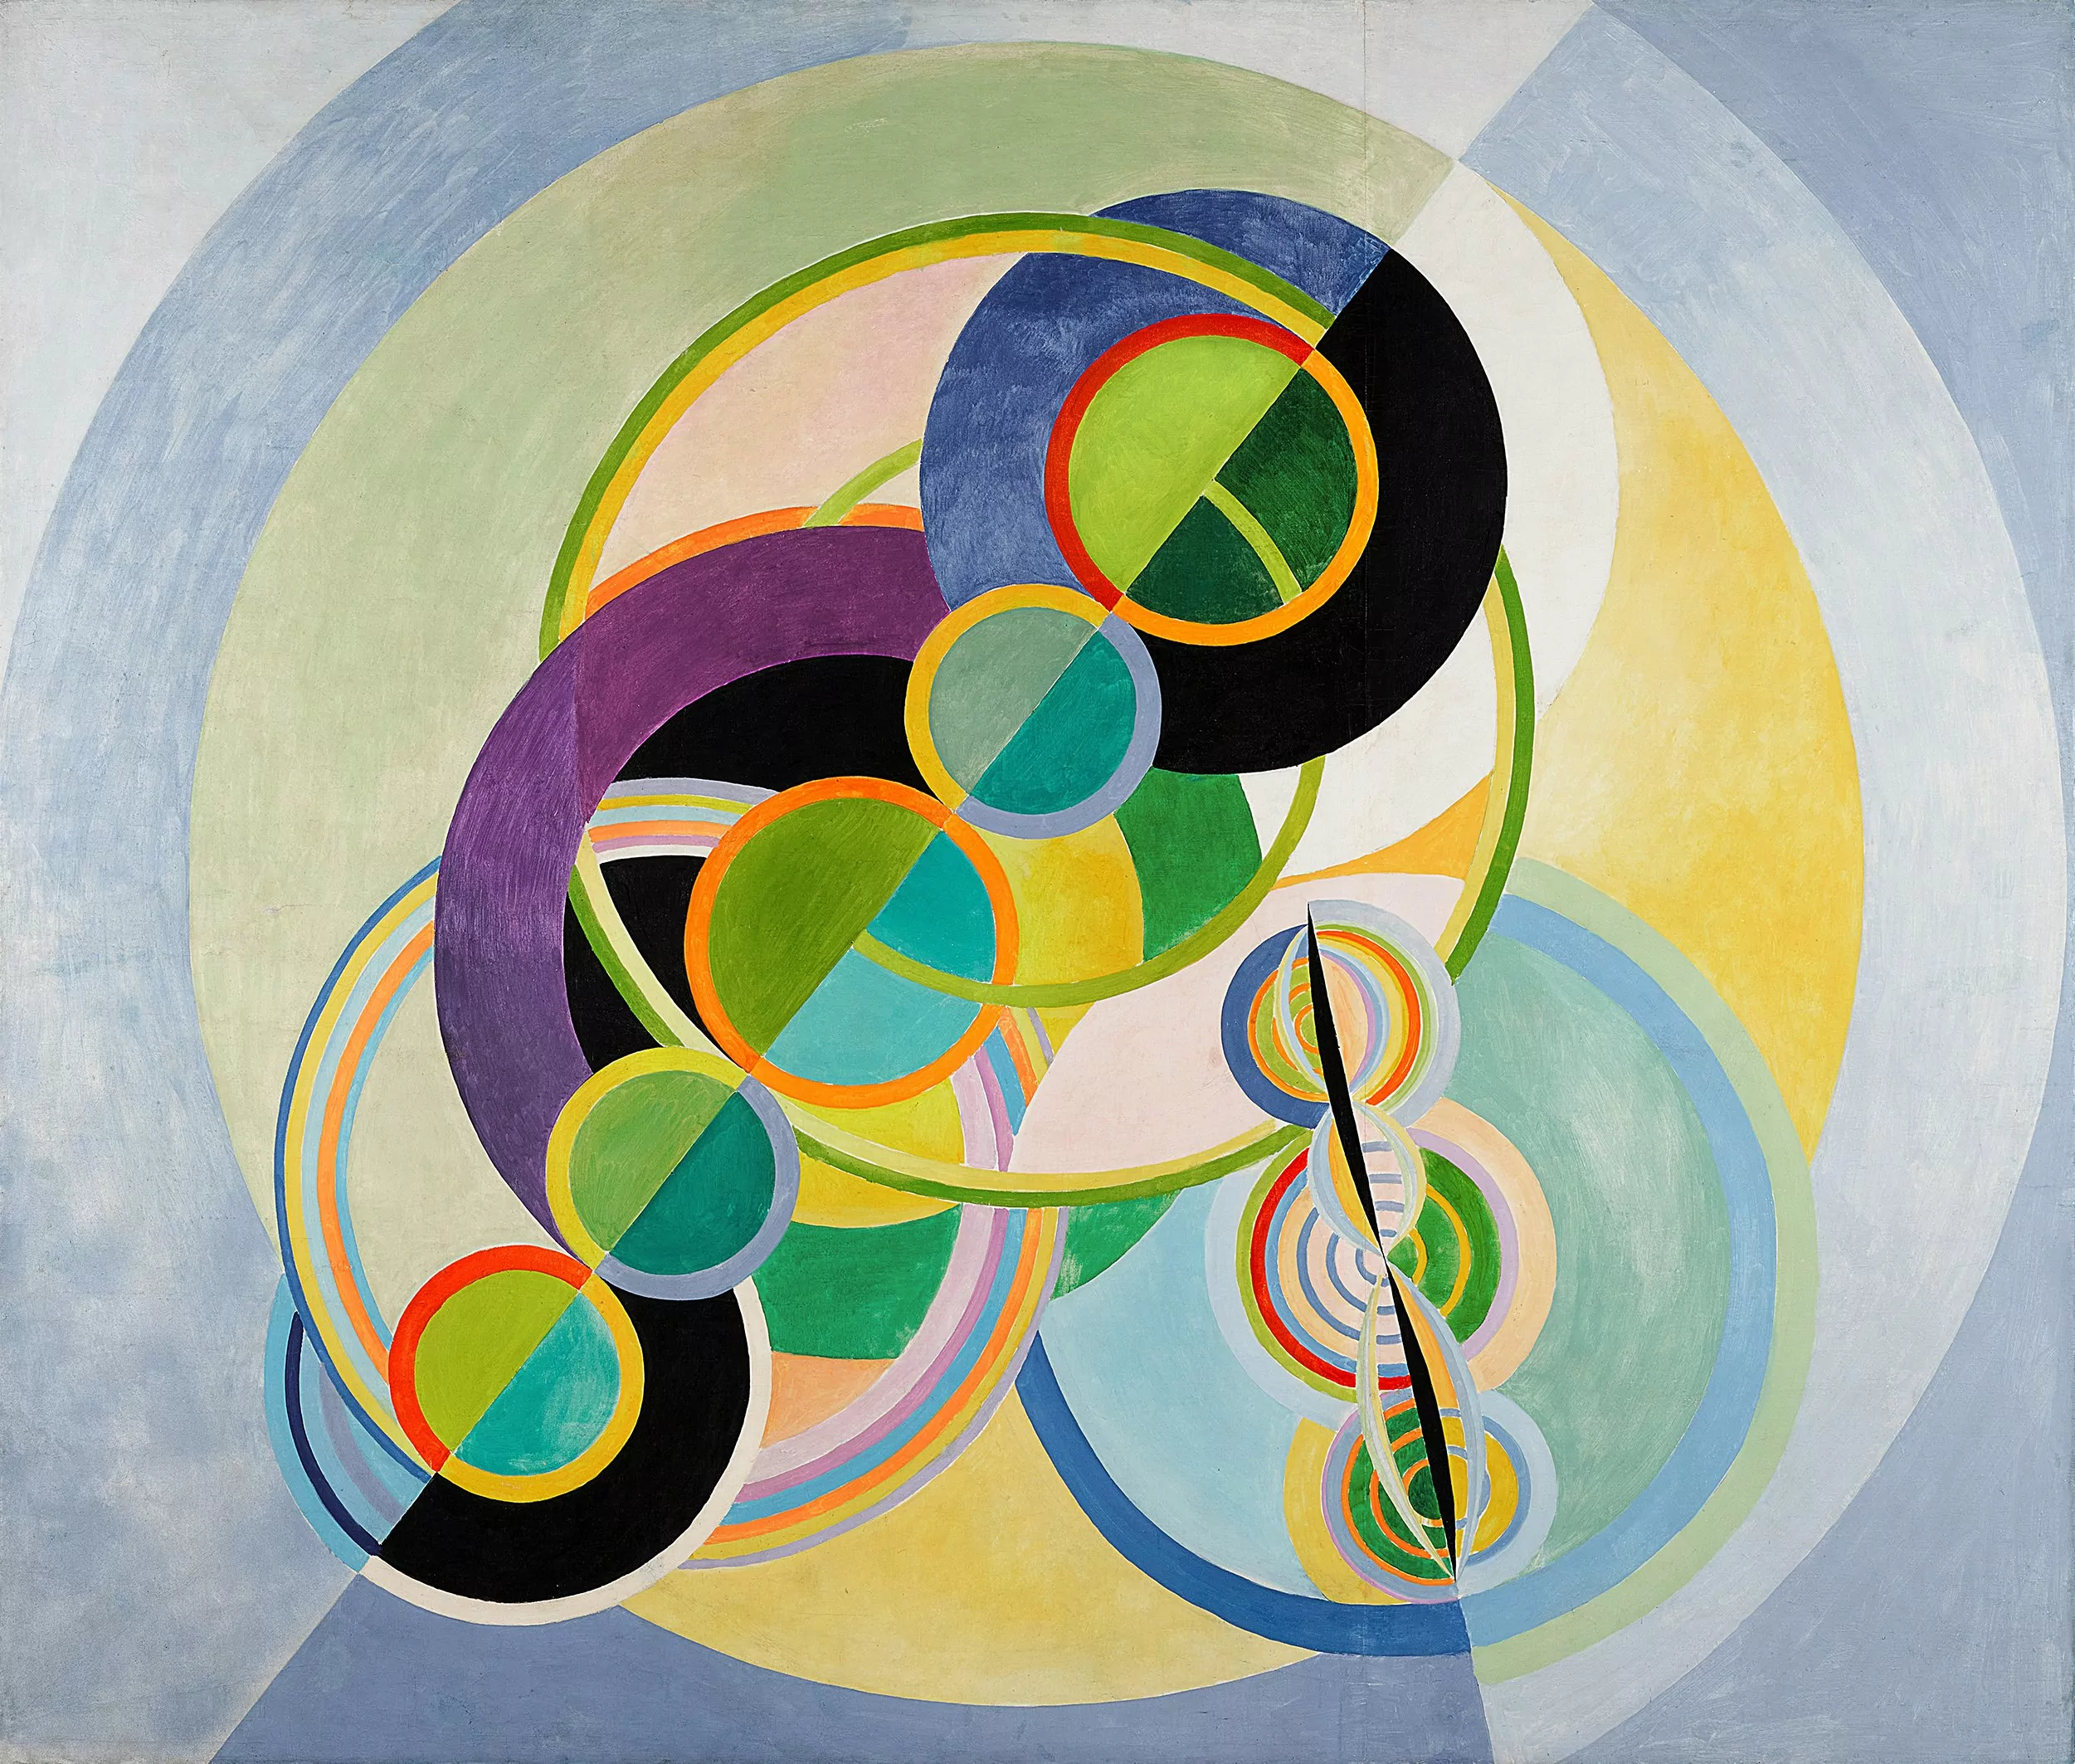 Circular rhythm, Robert Delaunay